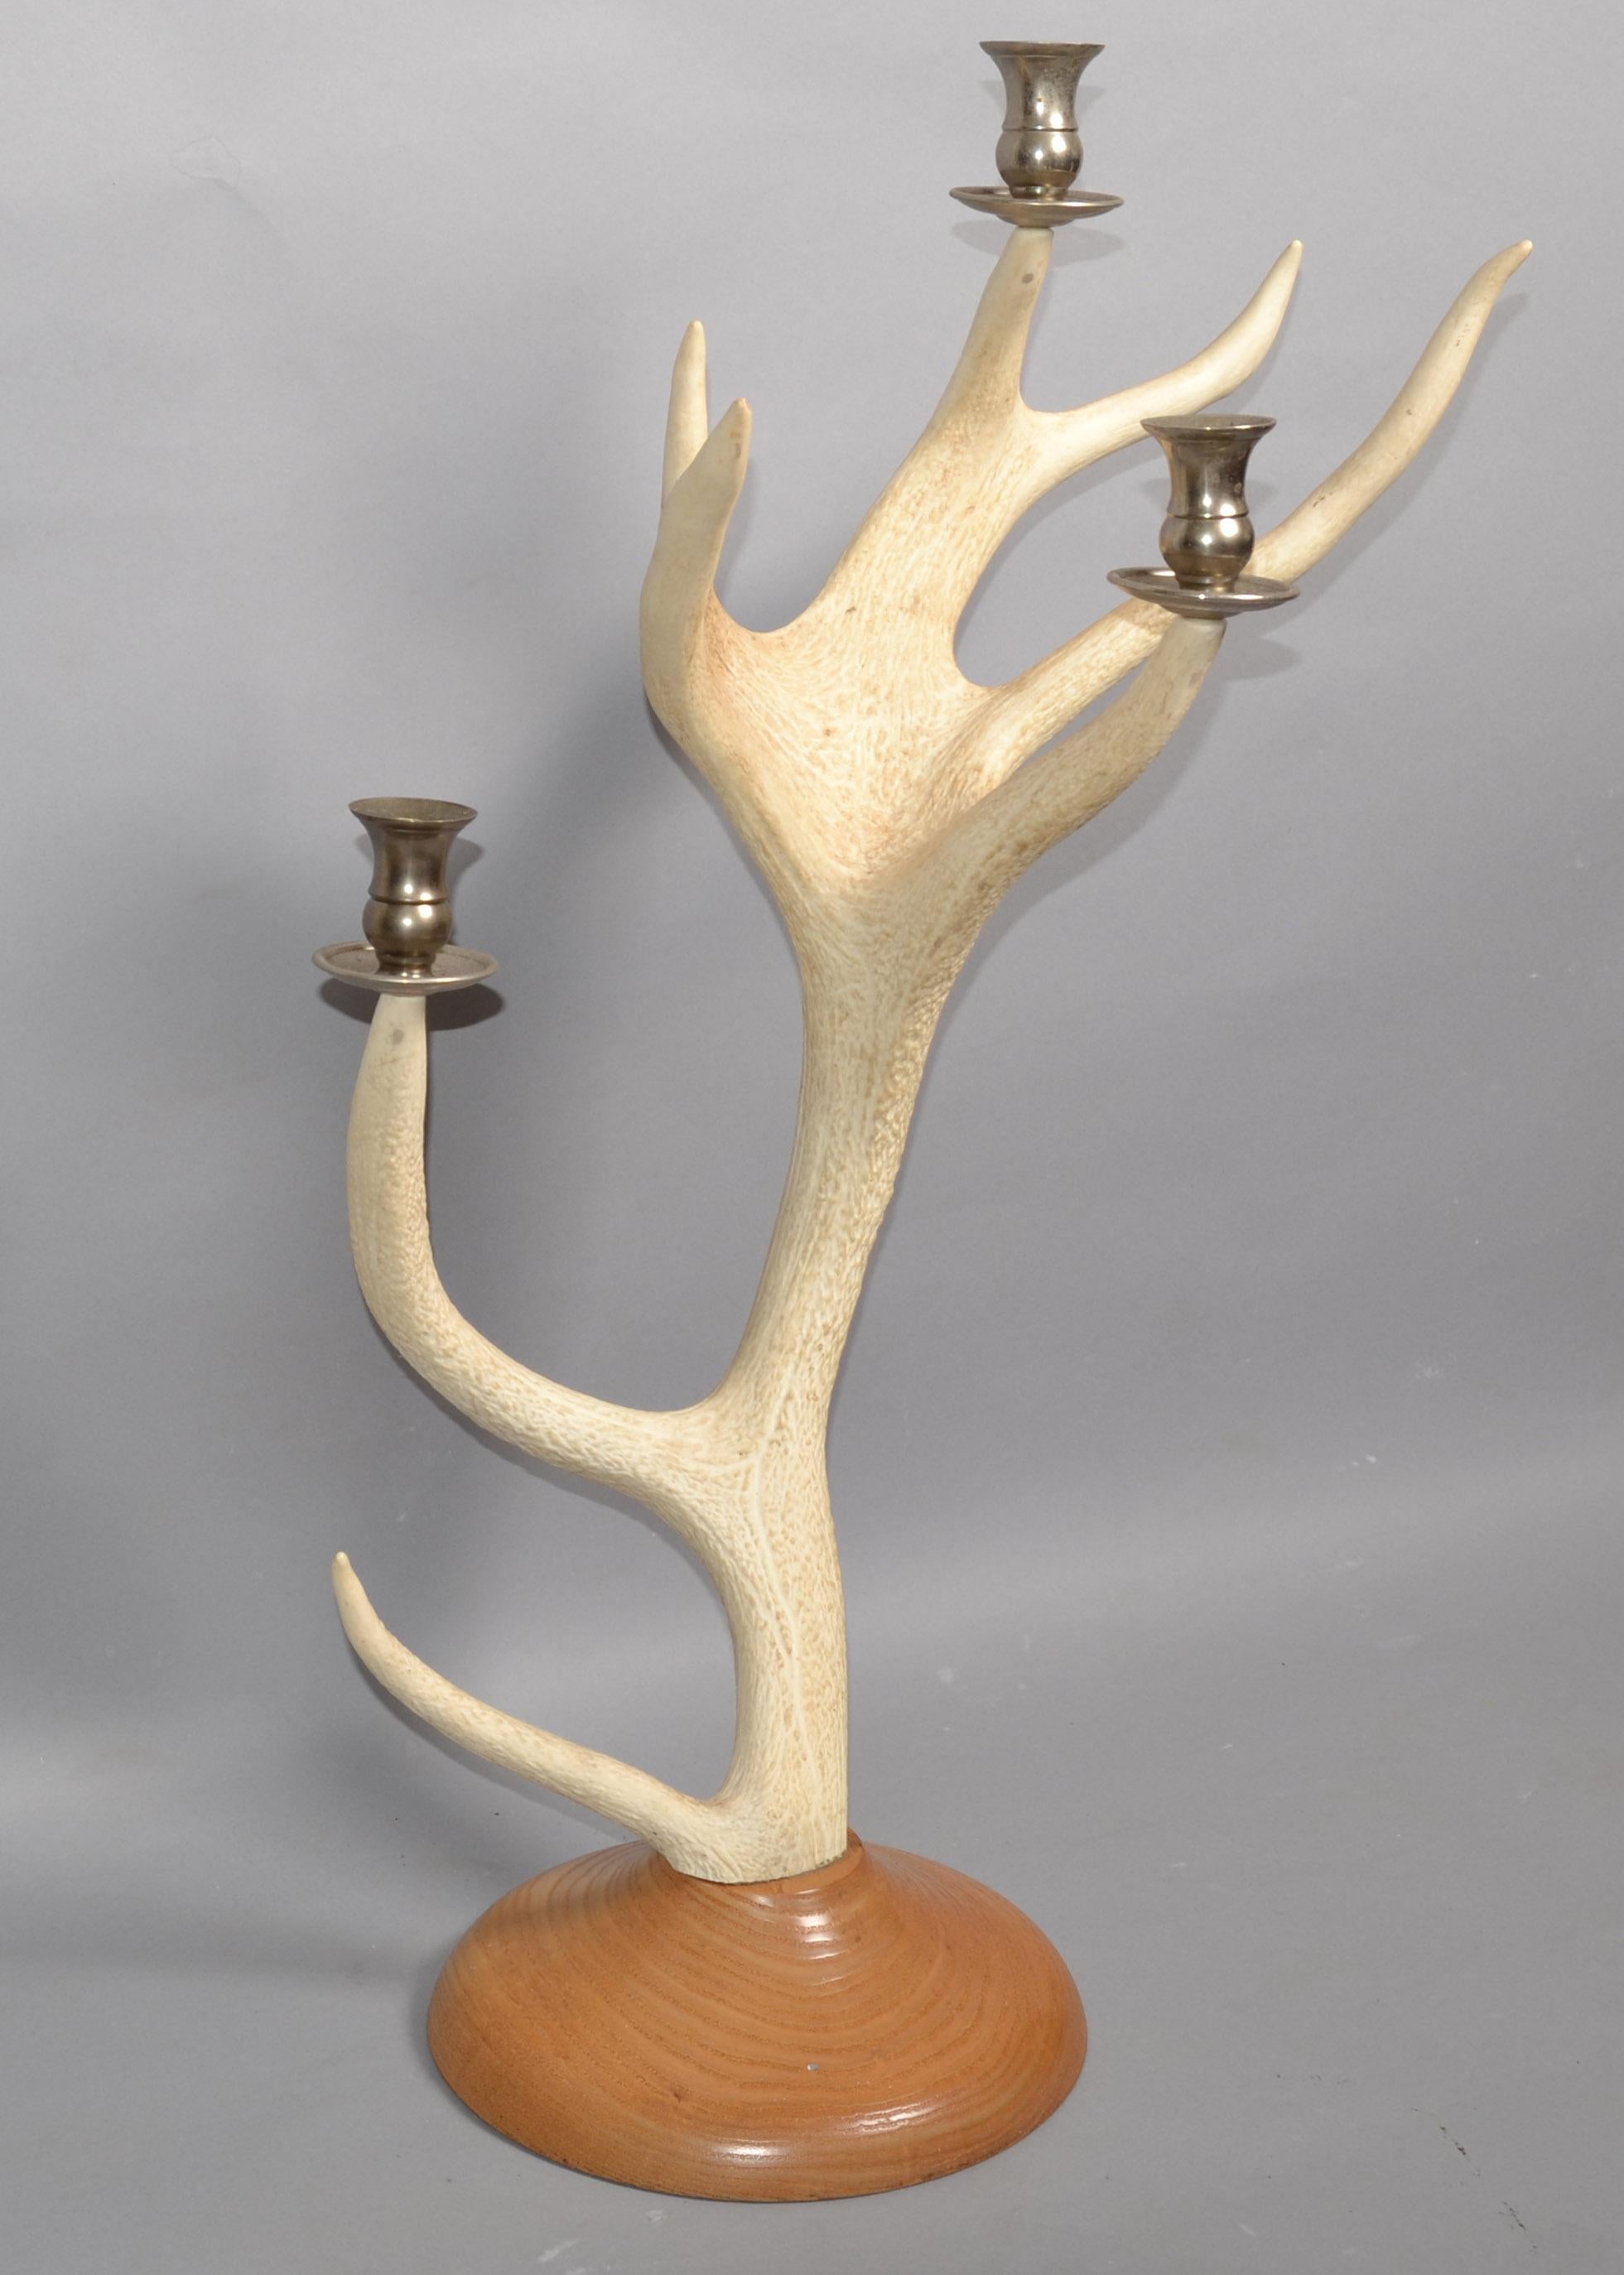 Im Stil von Christian Dior Mid-Century Modern weißer Schwanz Hirsch Bock Geweih, Hörner Kerzenhalter auf einem runden Eichenholz Basis montiert.
3 Stahl-Kerzenhalter sind sicher auf den Geweiharmen angebracht. Der Sockel ist mit einem braunen